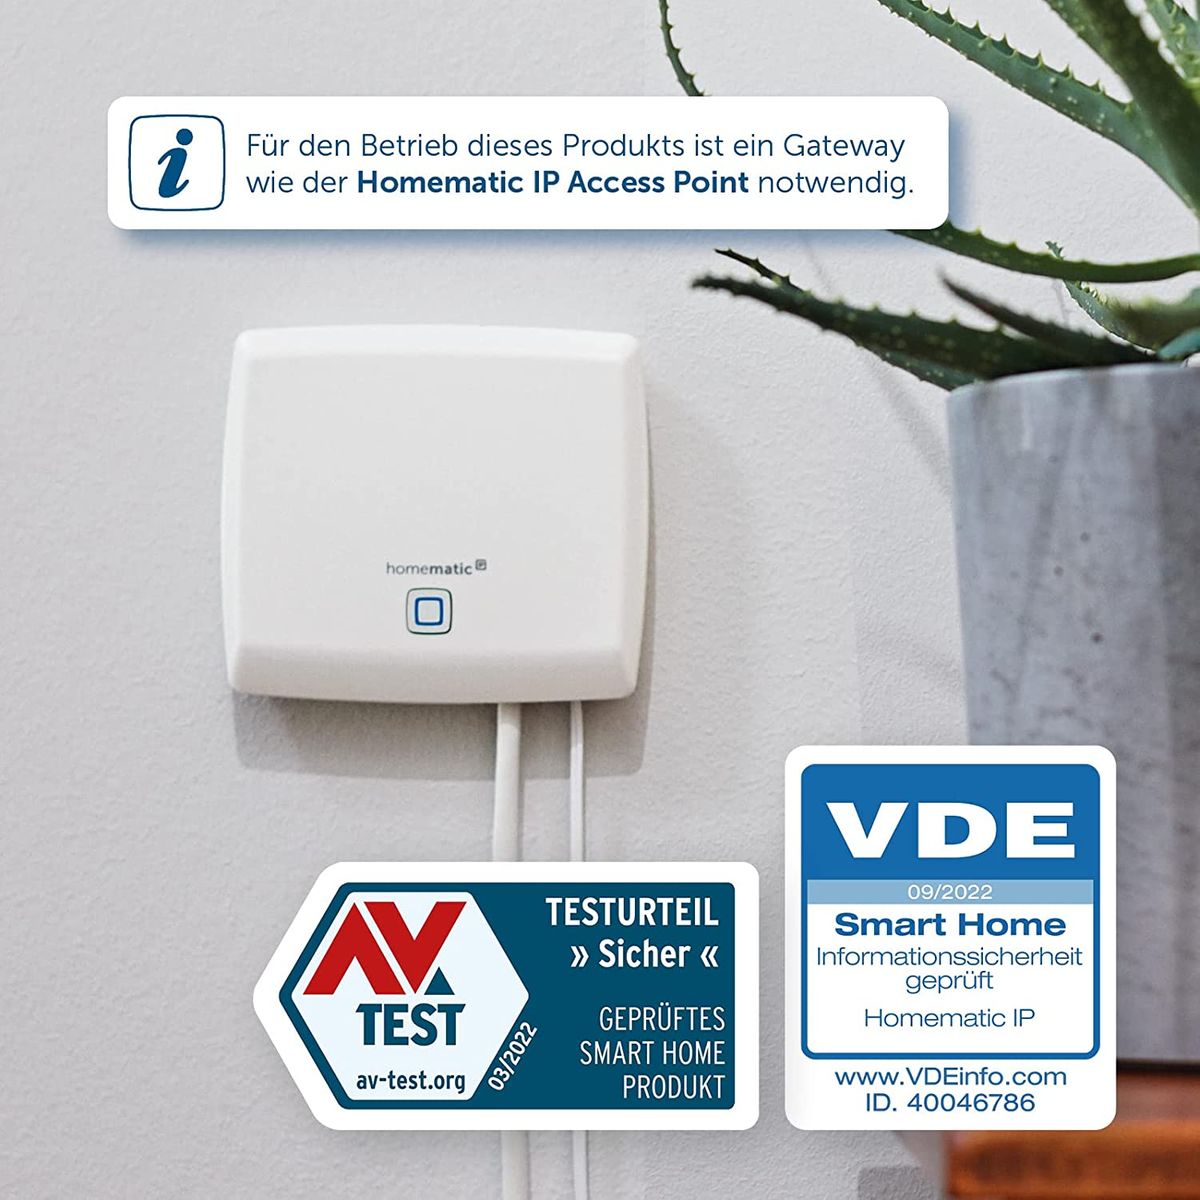 Homematic IP Smart Home Garagentortaster, smarte Garagentorsteuerung zum Nachrüsten, 150586A0